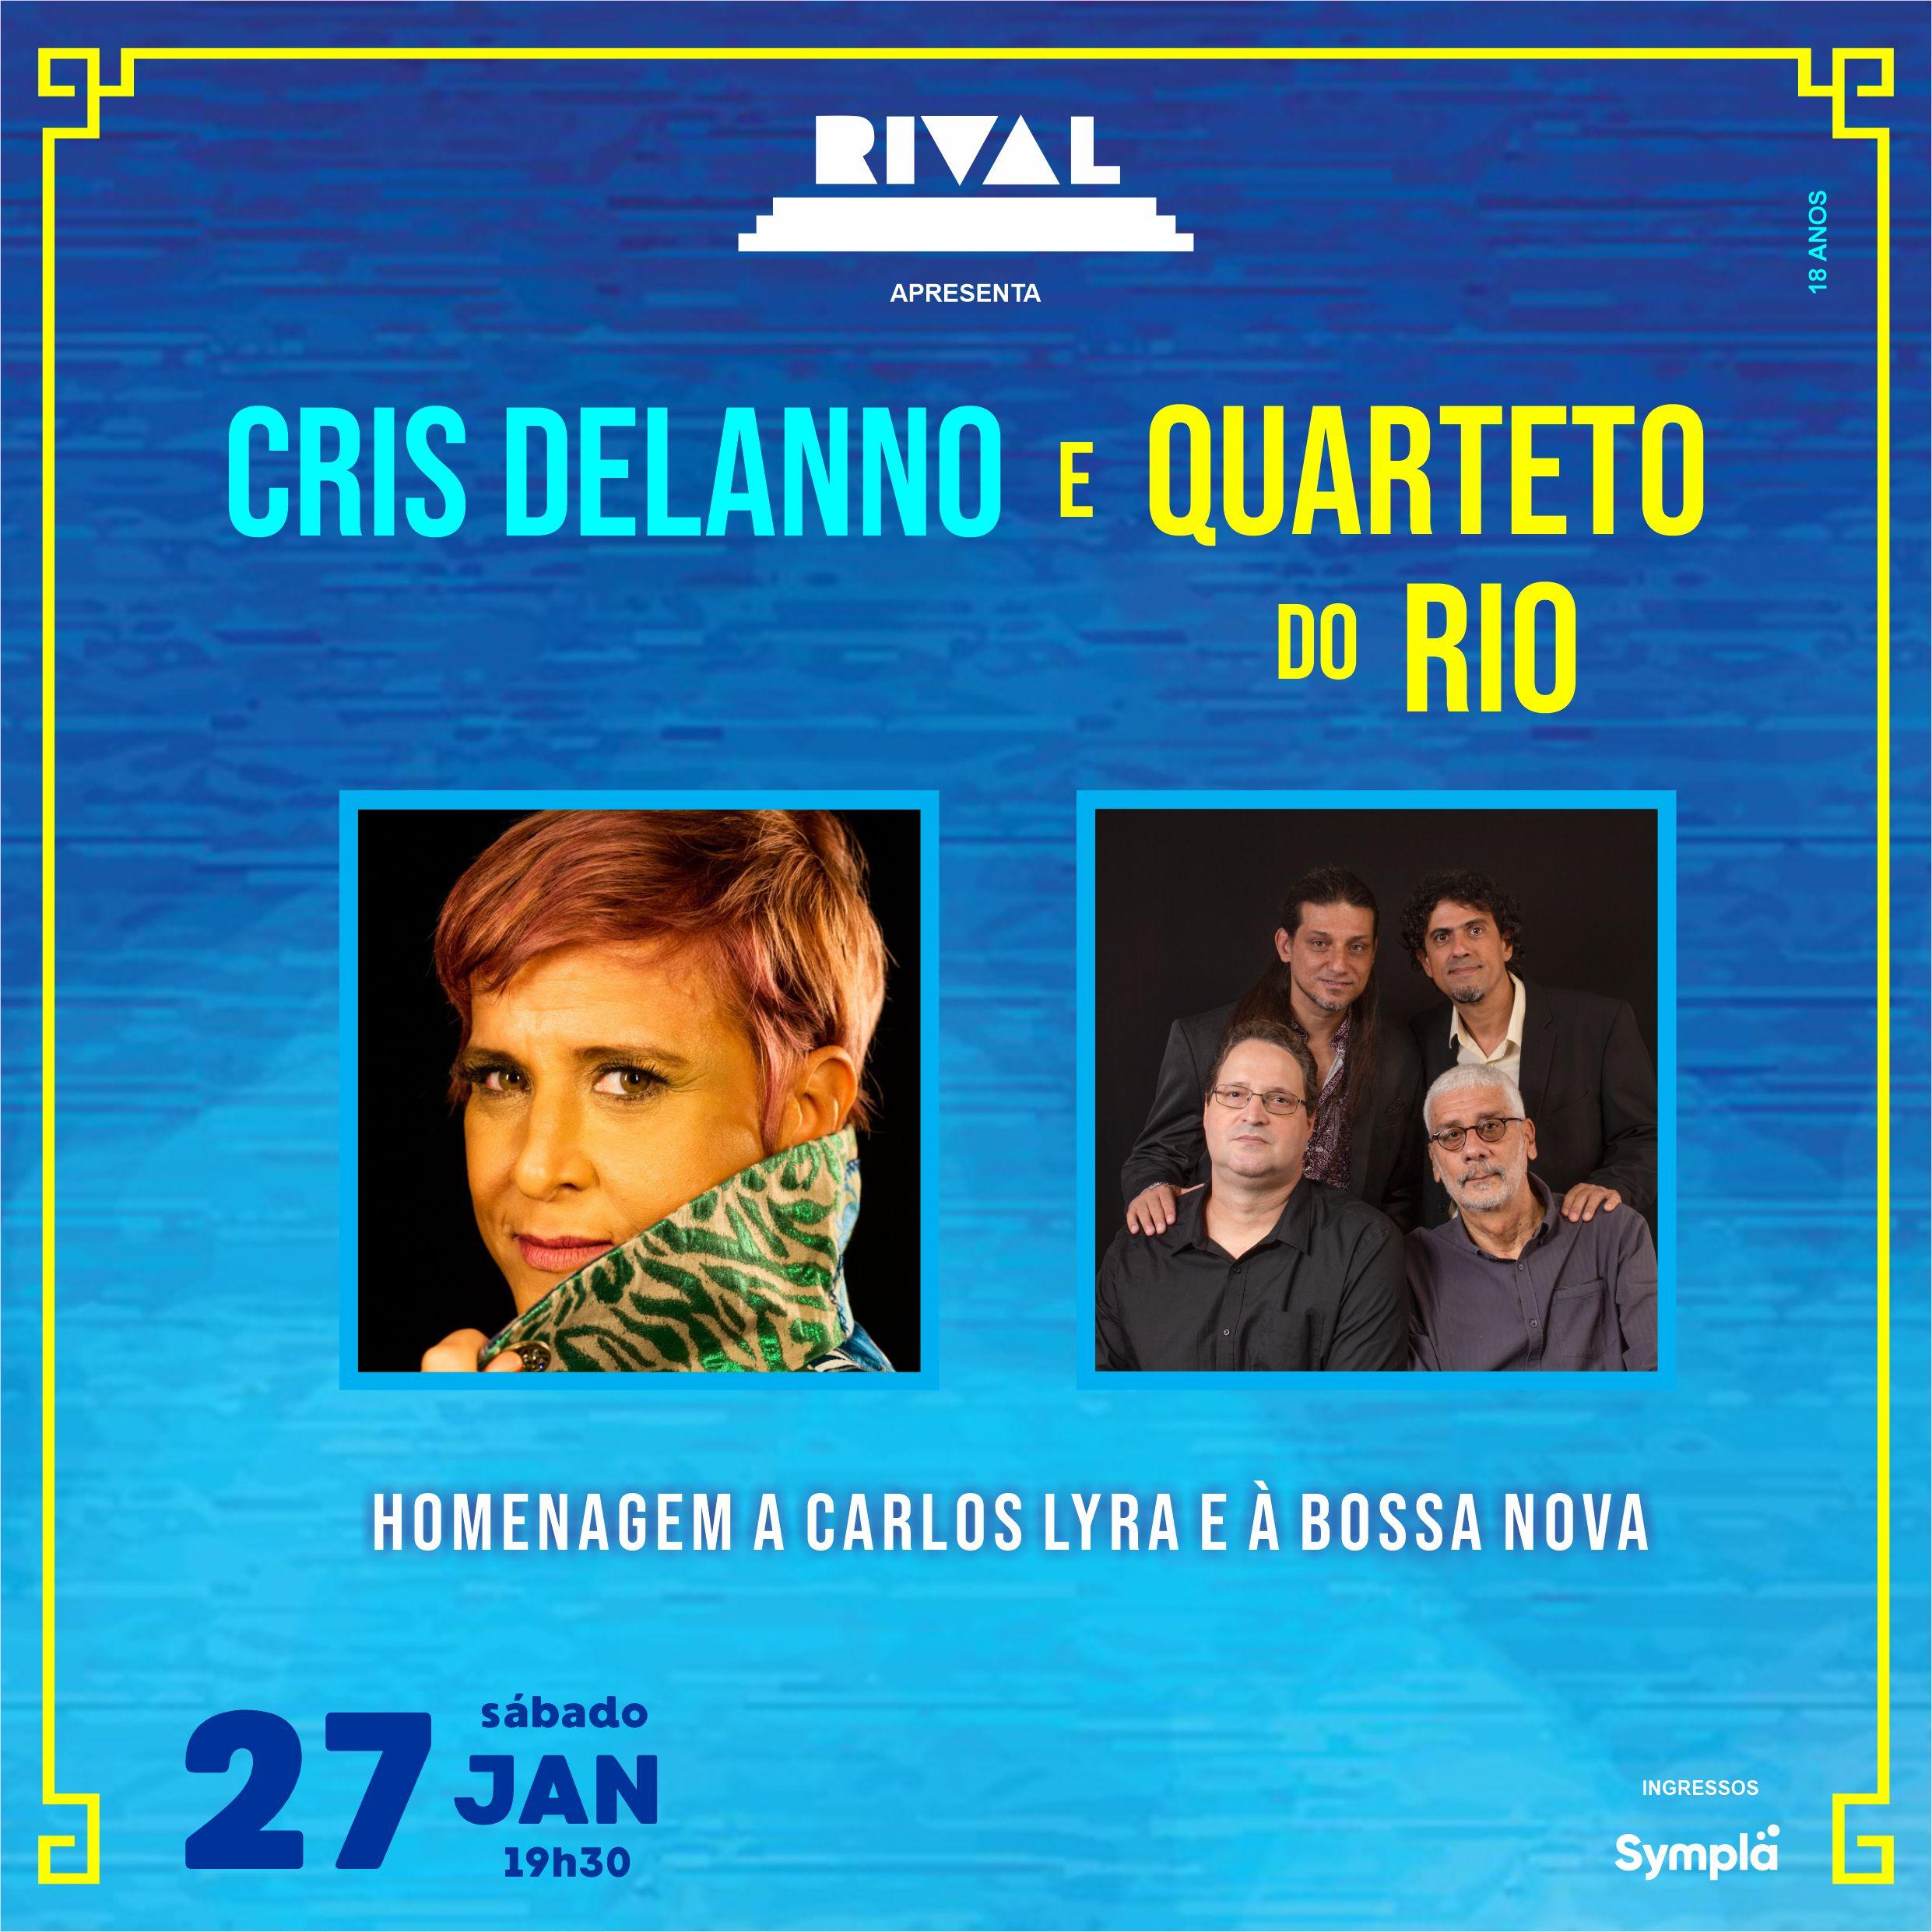 Cris Delanno e Quarteto do Rio Celebram a Bossa Nova em Homenagem a Carlos Lyra